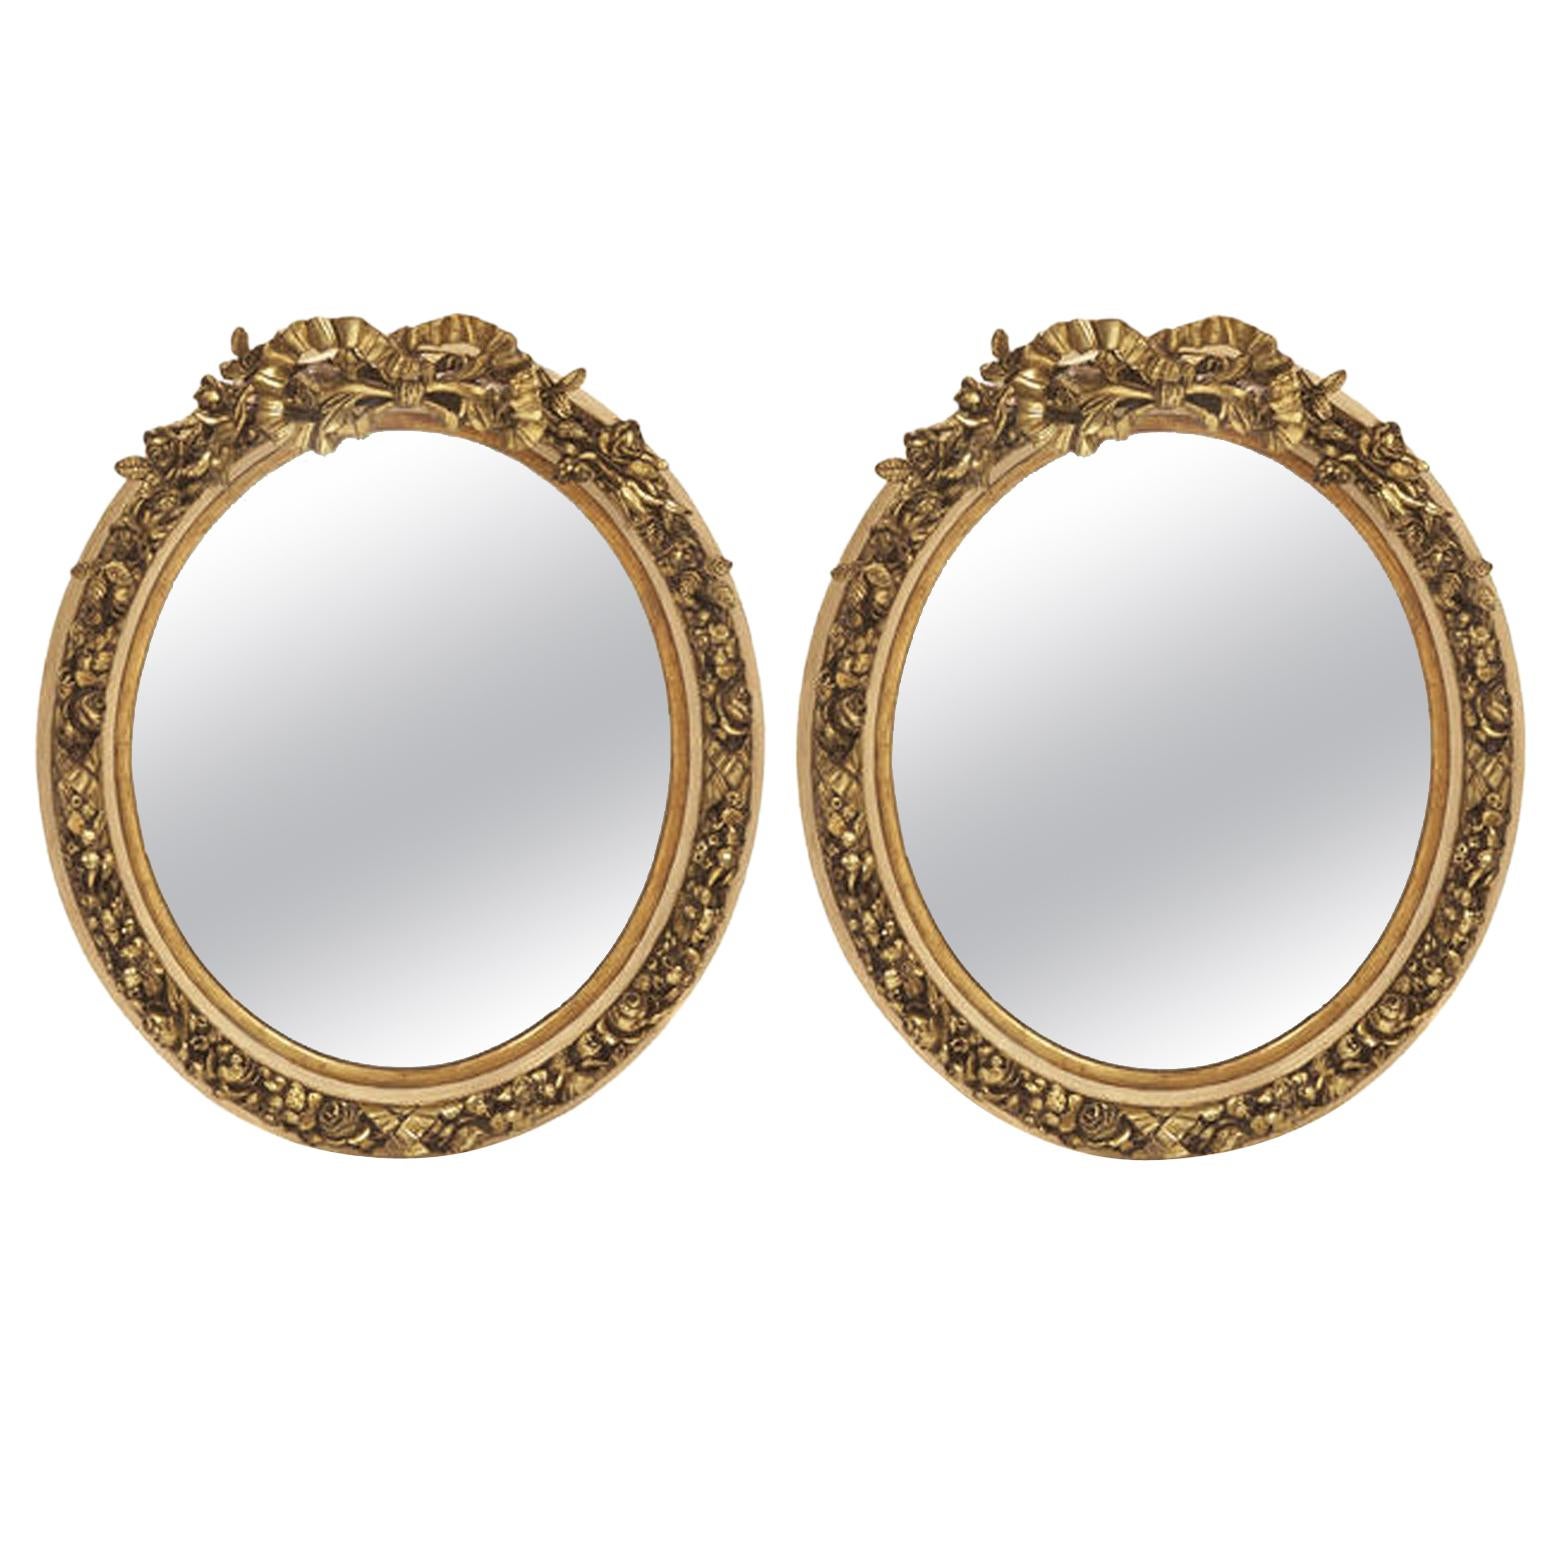 Paire de miroirs ovales dorés de style Louis XV français